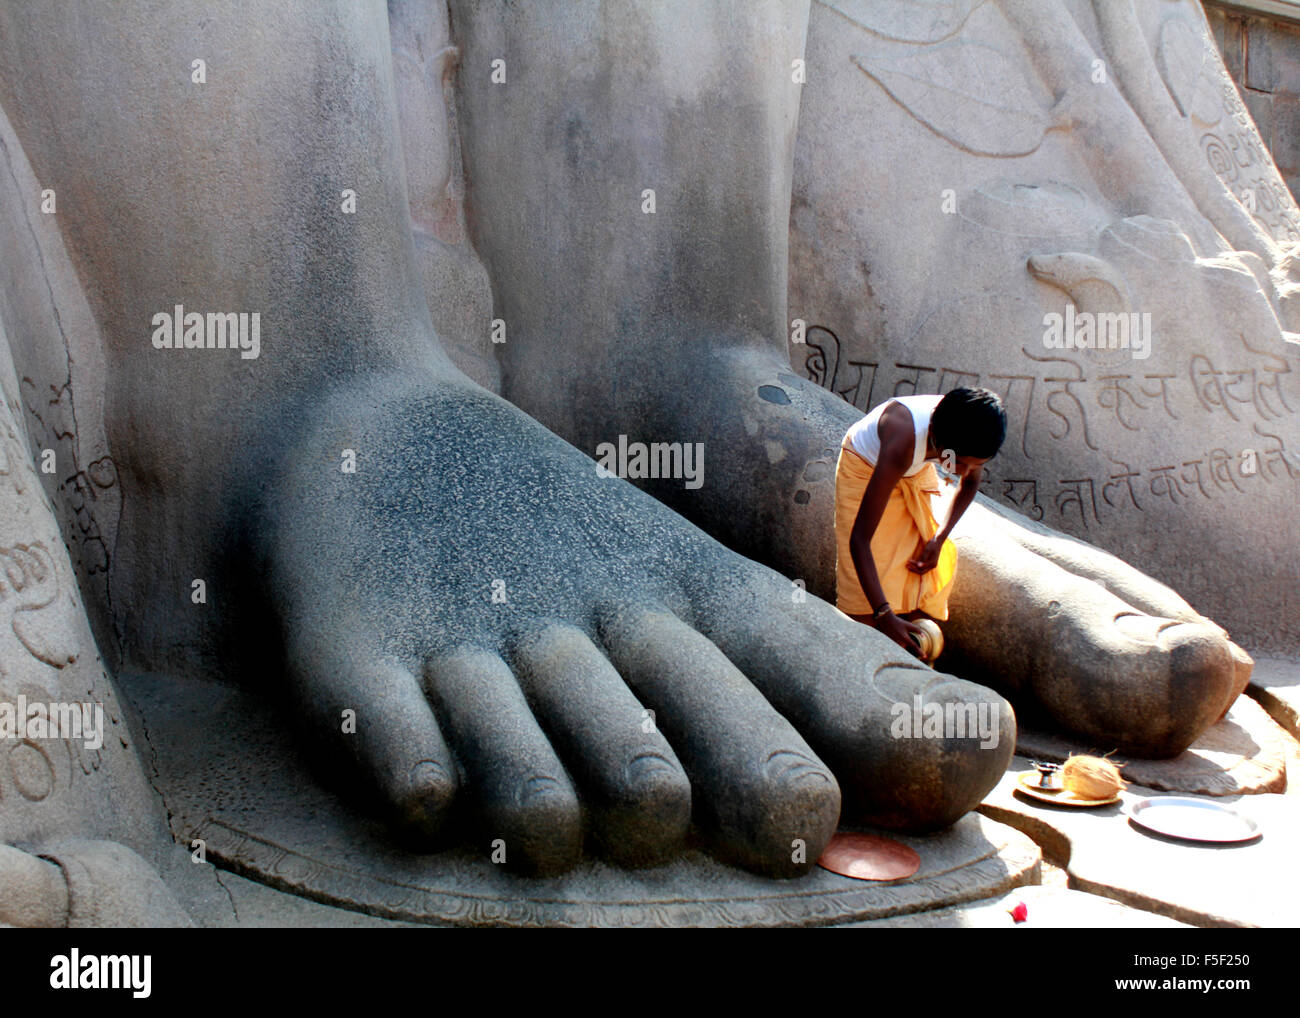 Un jeune prêtre prosterné aux pieds de Gommateshwara bahubali à Shravanabelagola Hassan dans le district de Karnataka, Inde Banque D'Images